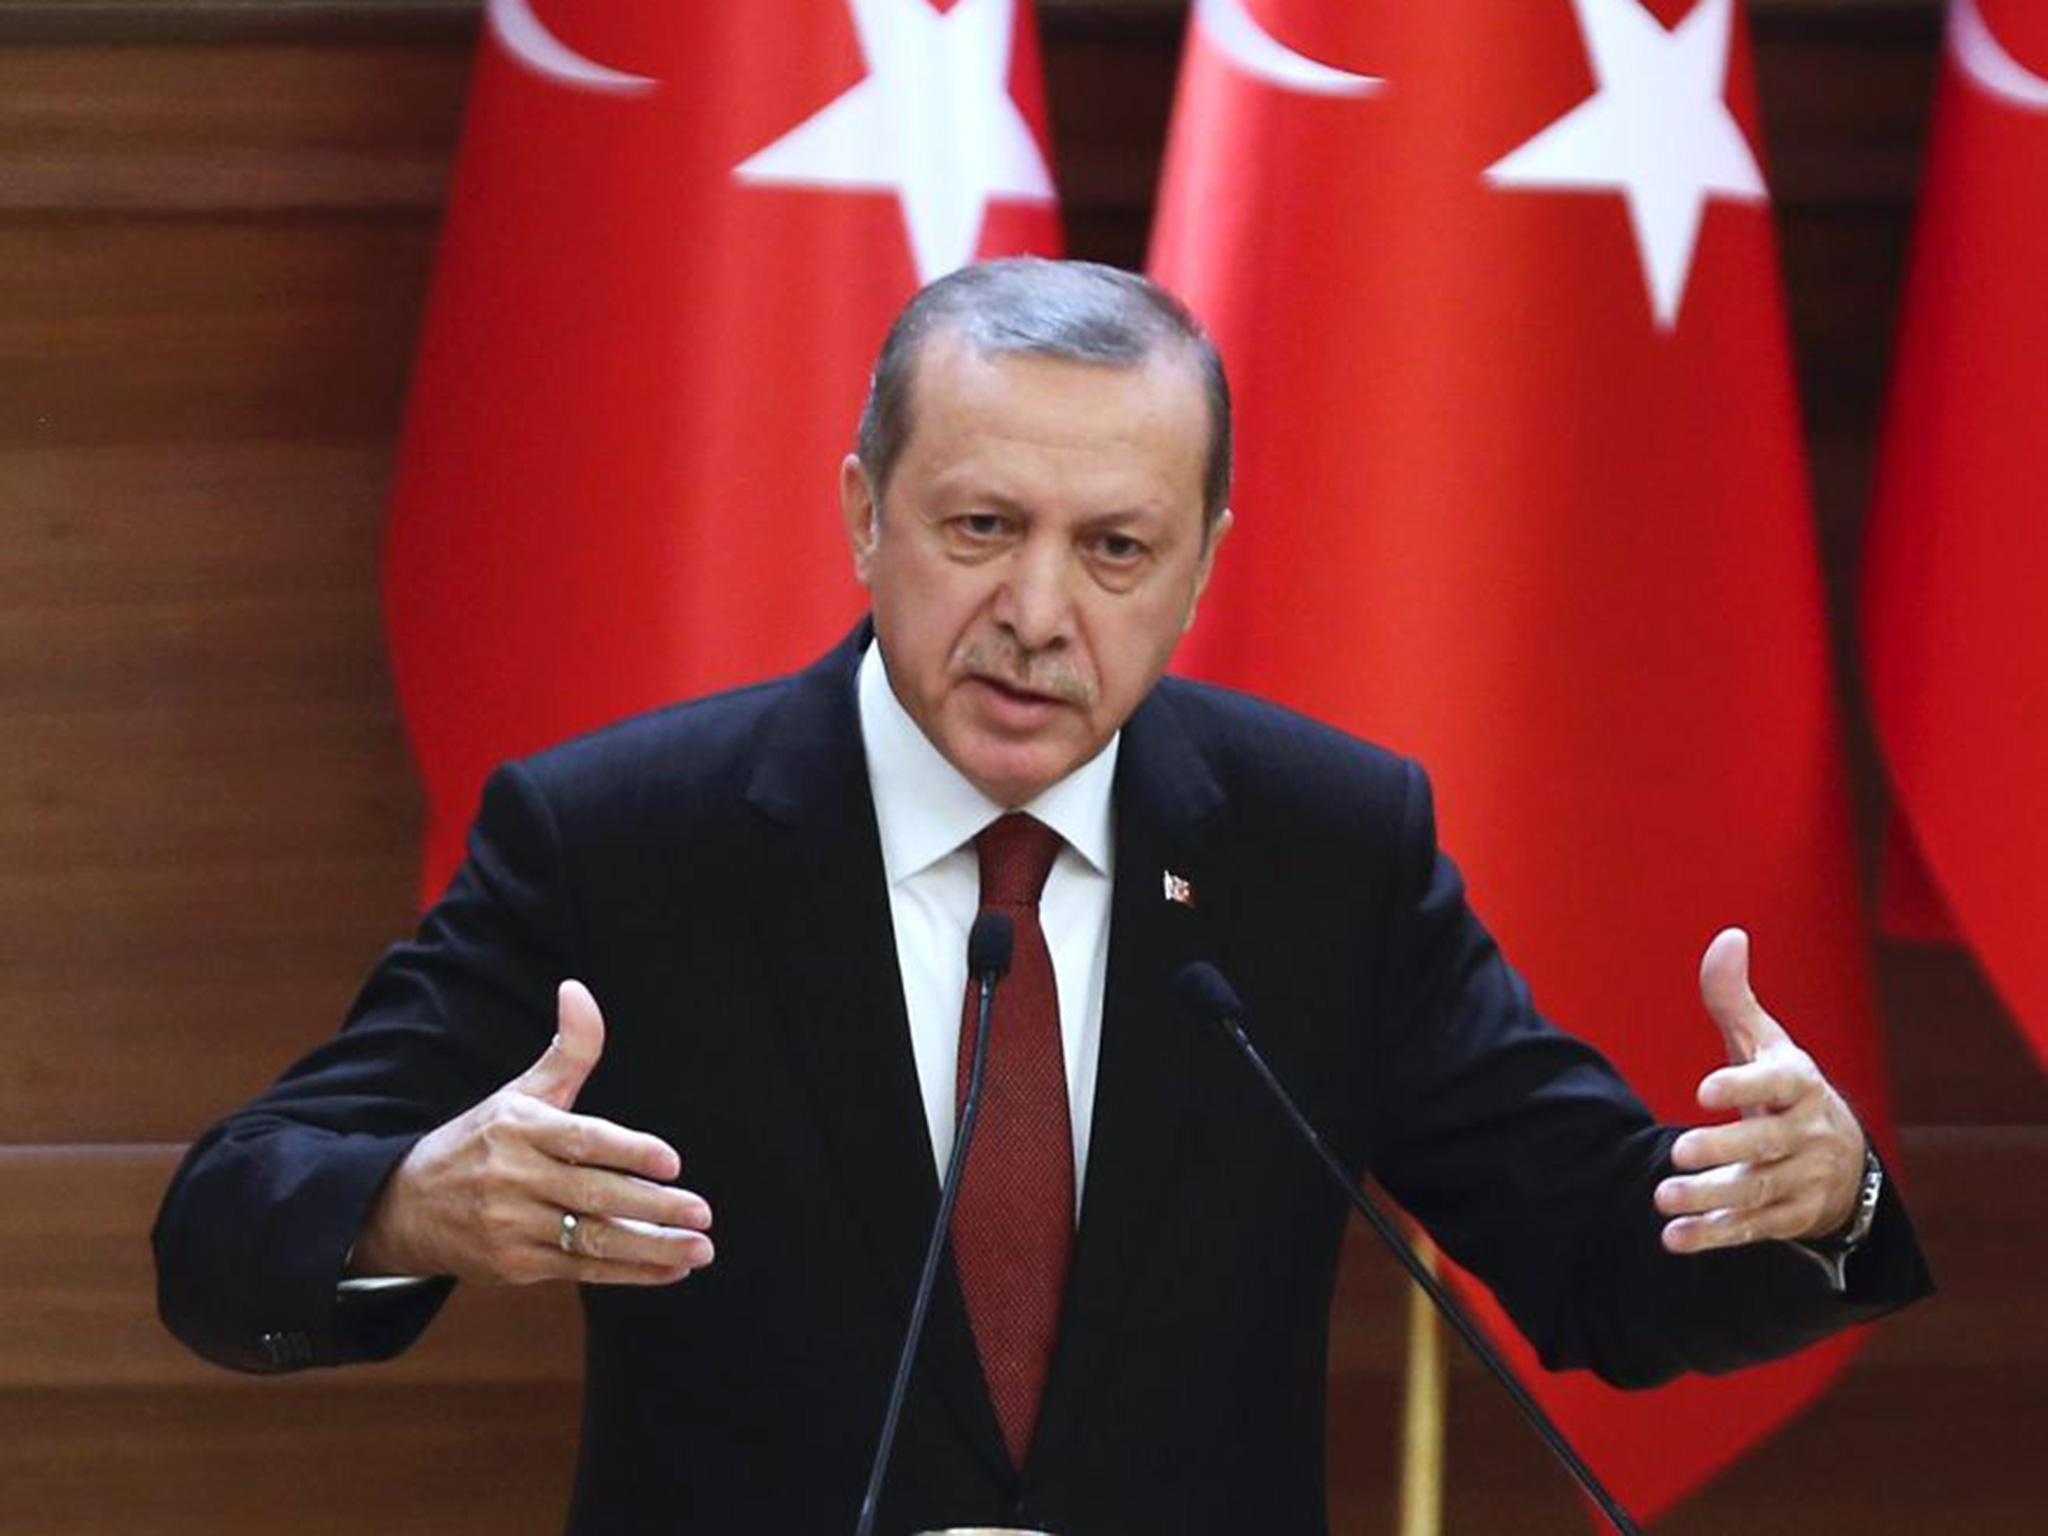   أردوغان: سنواصل العمليات على الحدود إلى أن نقضي على كل التهديدات